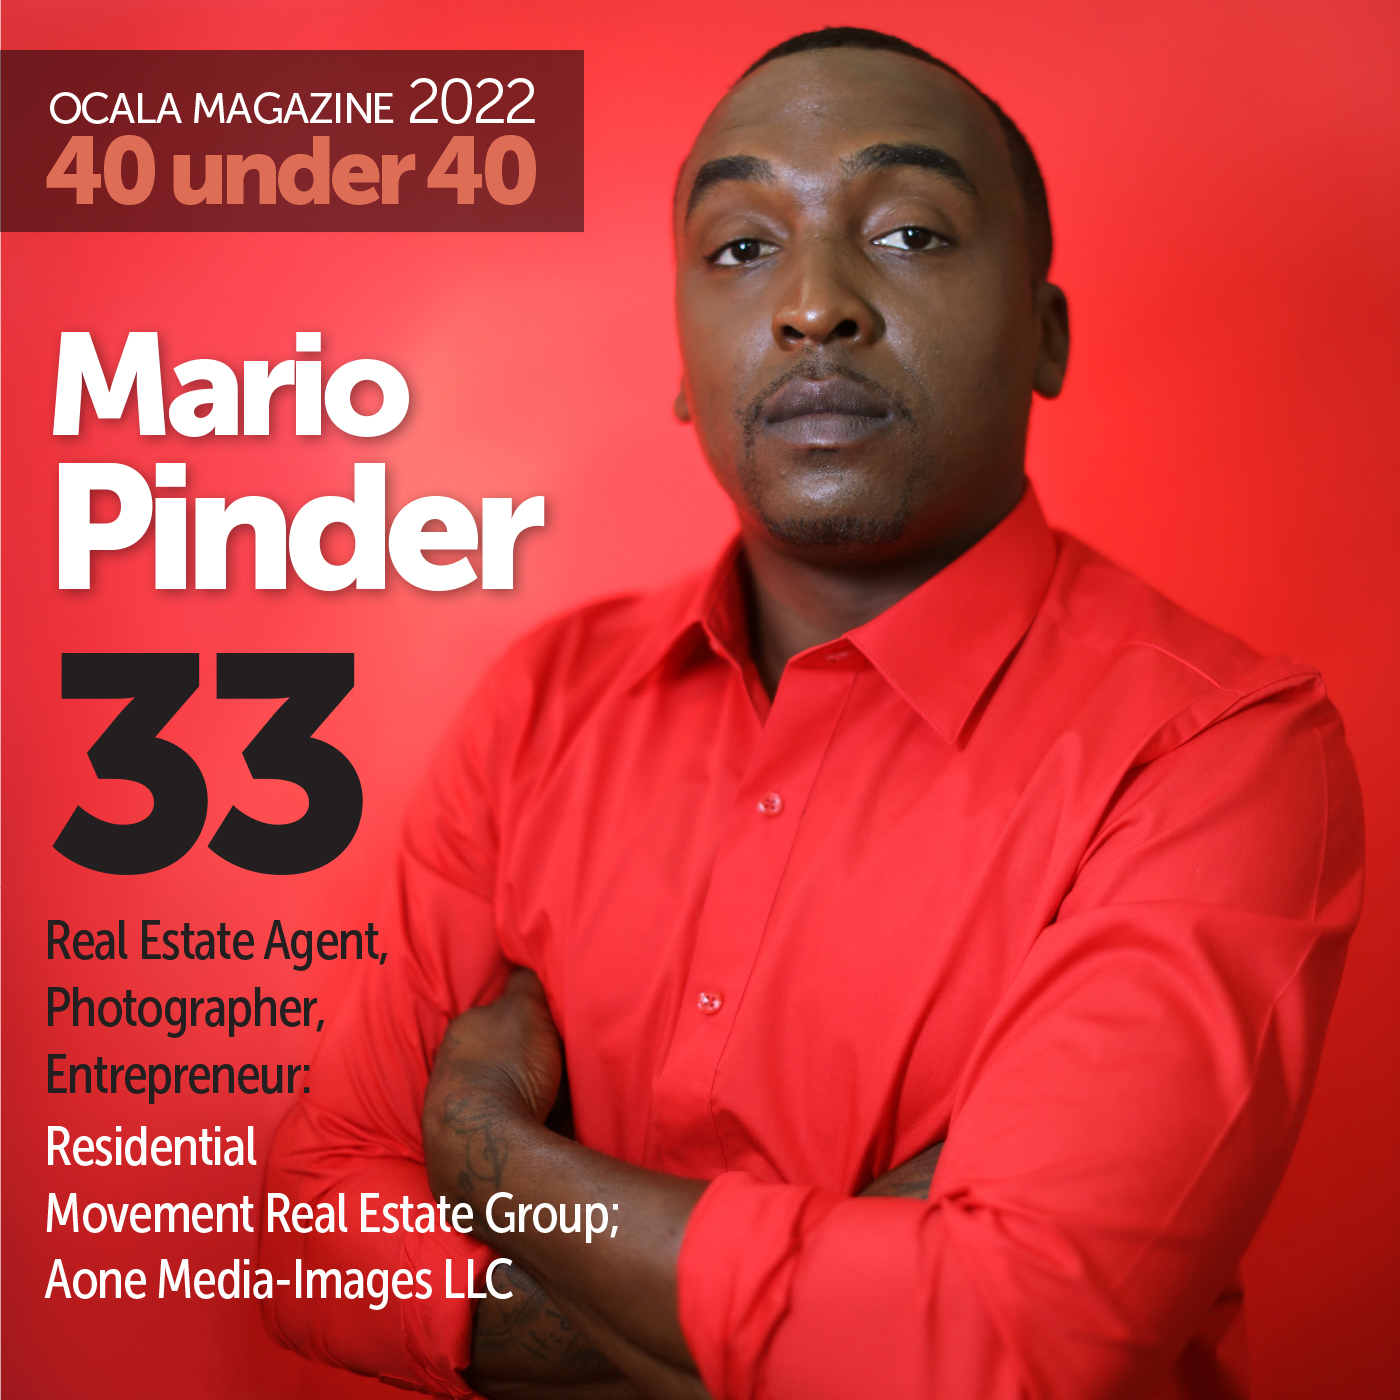 Mario Pinder Ocala Magazine 2022 40 under 40